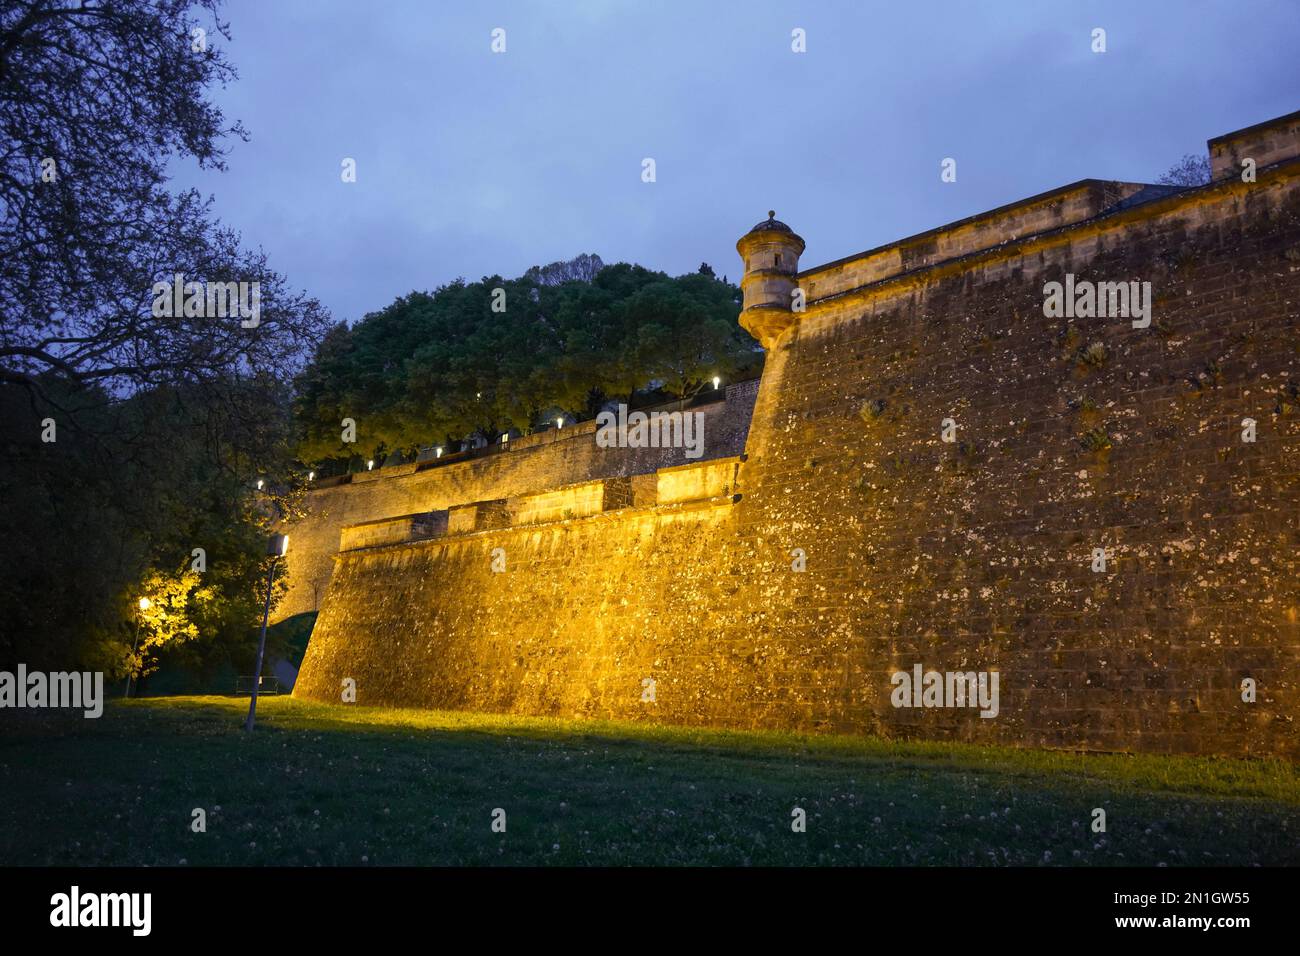 Remparts de la vieille ville et remparts de la grande citadelle fortifiée, la Ciudadela en forme d'étoile, Citadelle de Pampelune, Pampelune, Navarre, Espagne. Banque D'Images